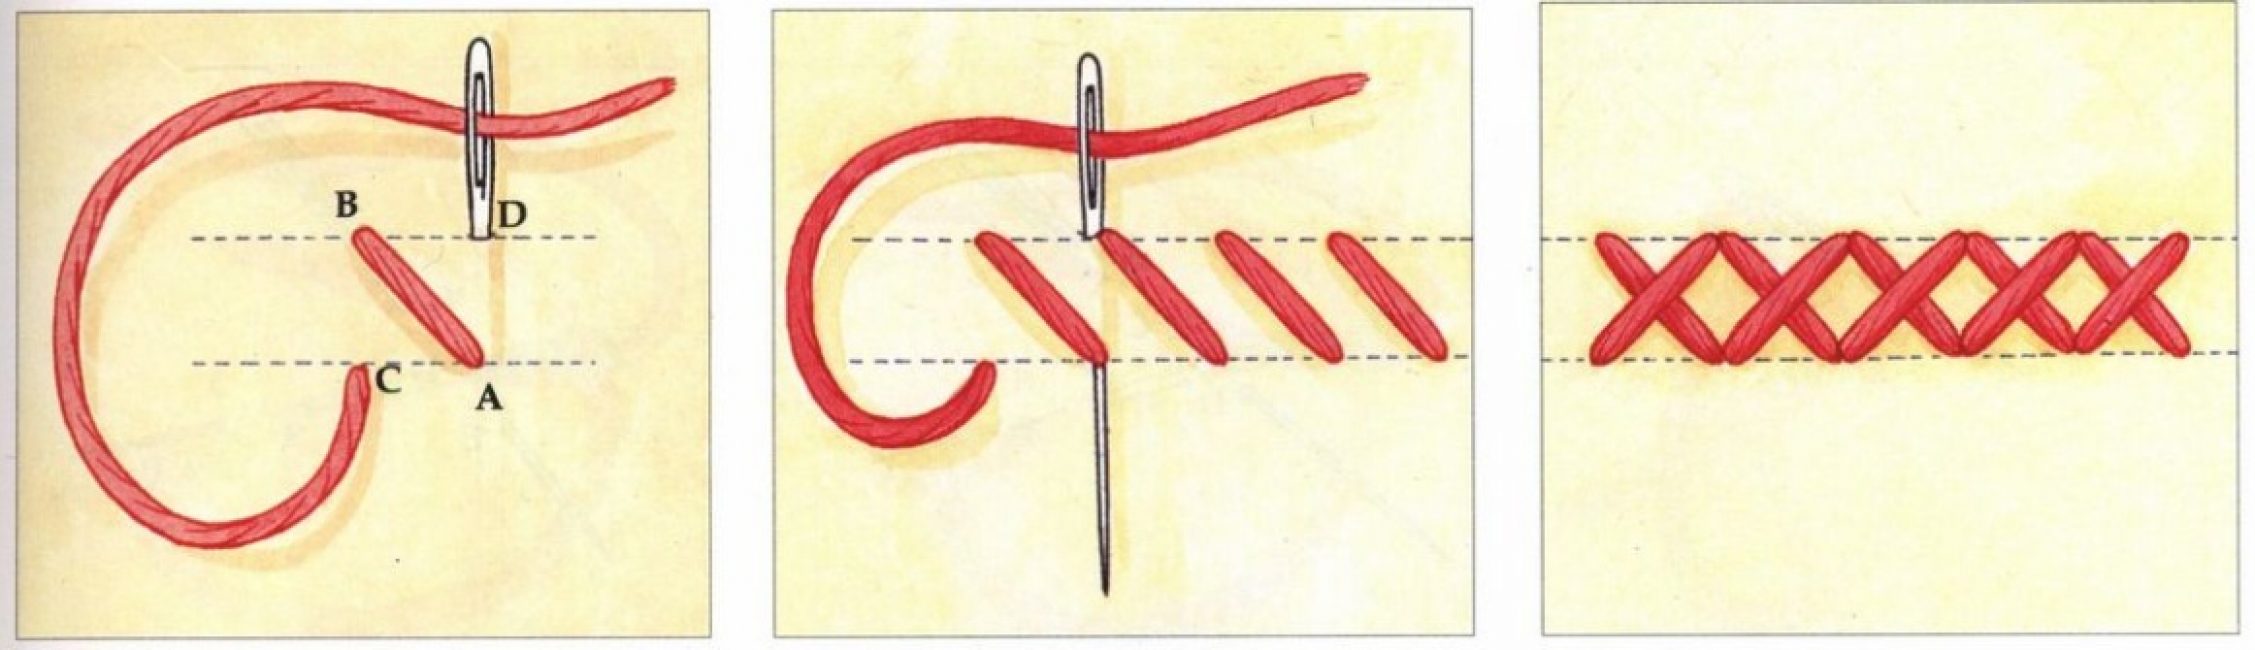 Техника вышивания крестиком для начинающих пошагово